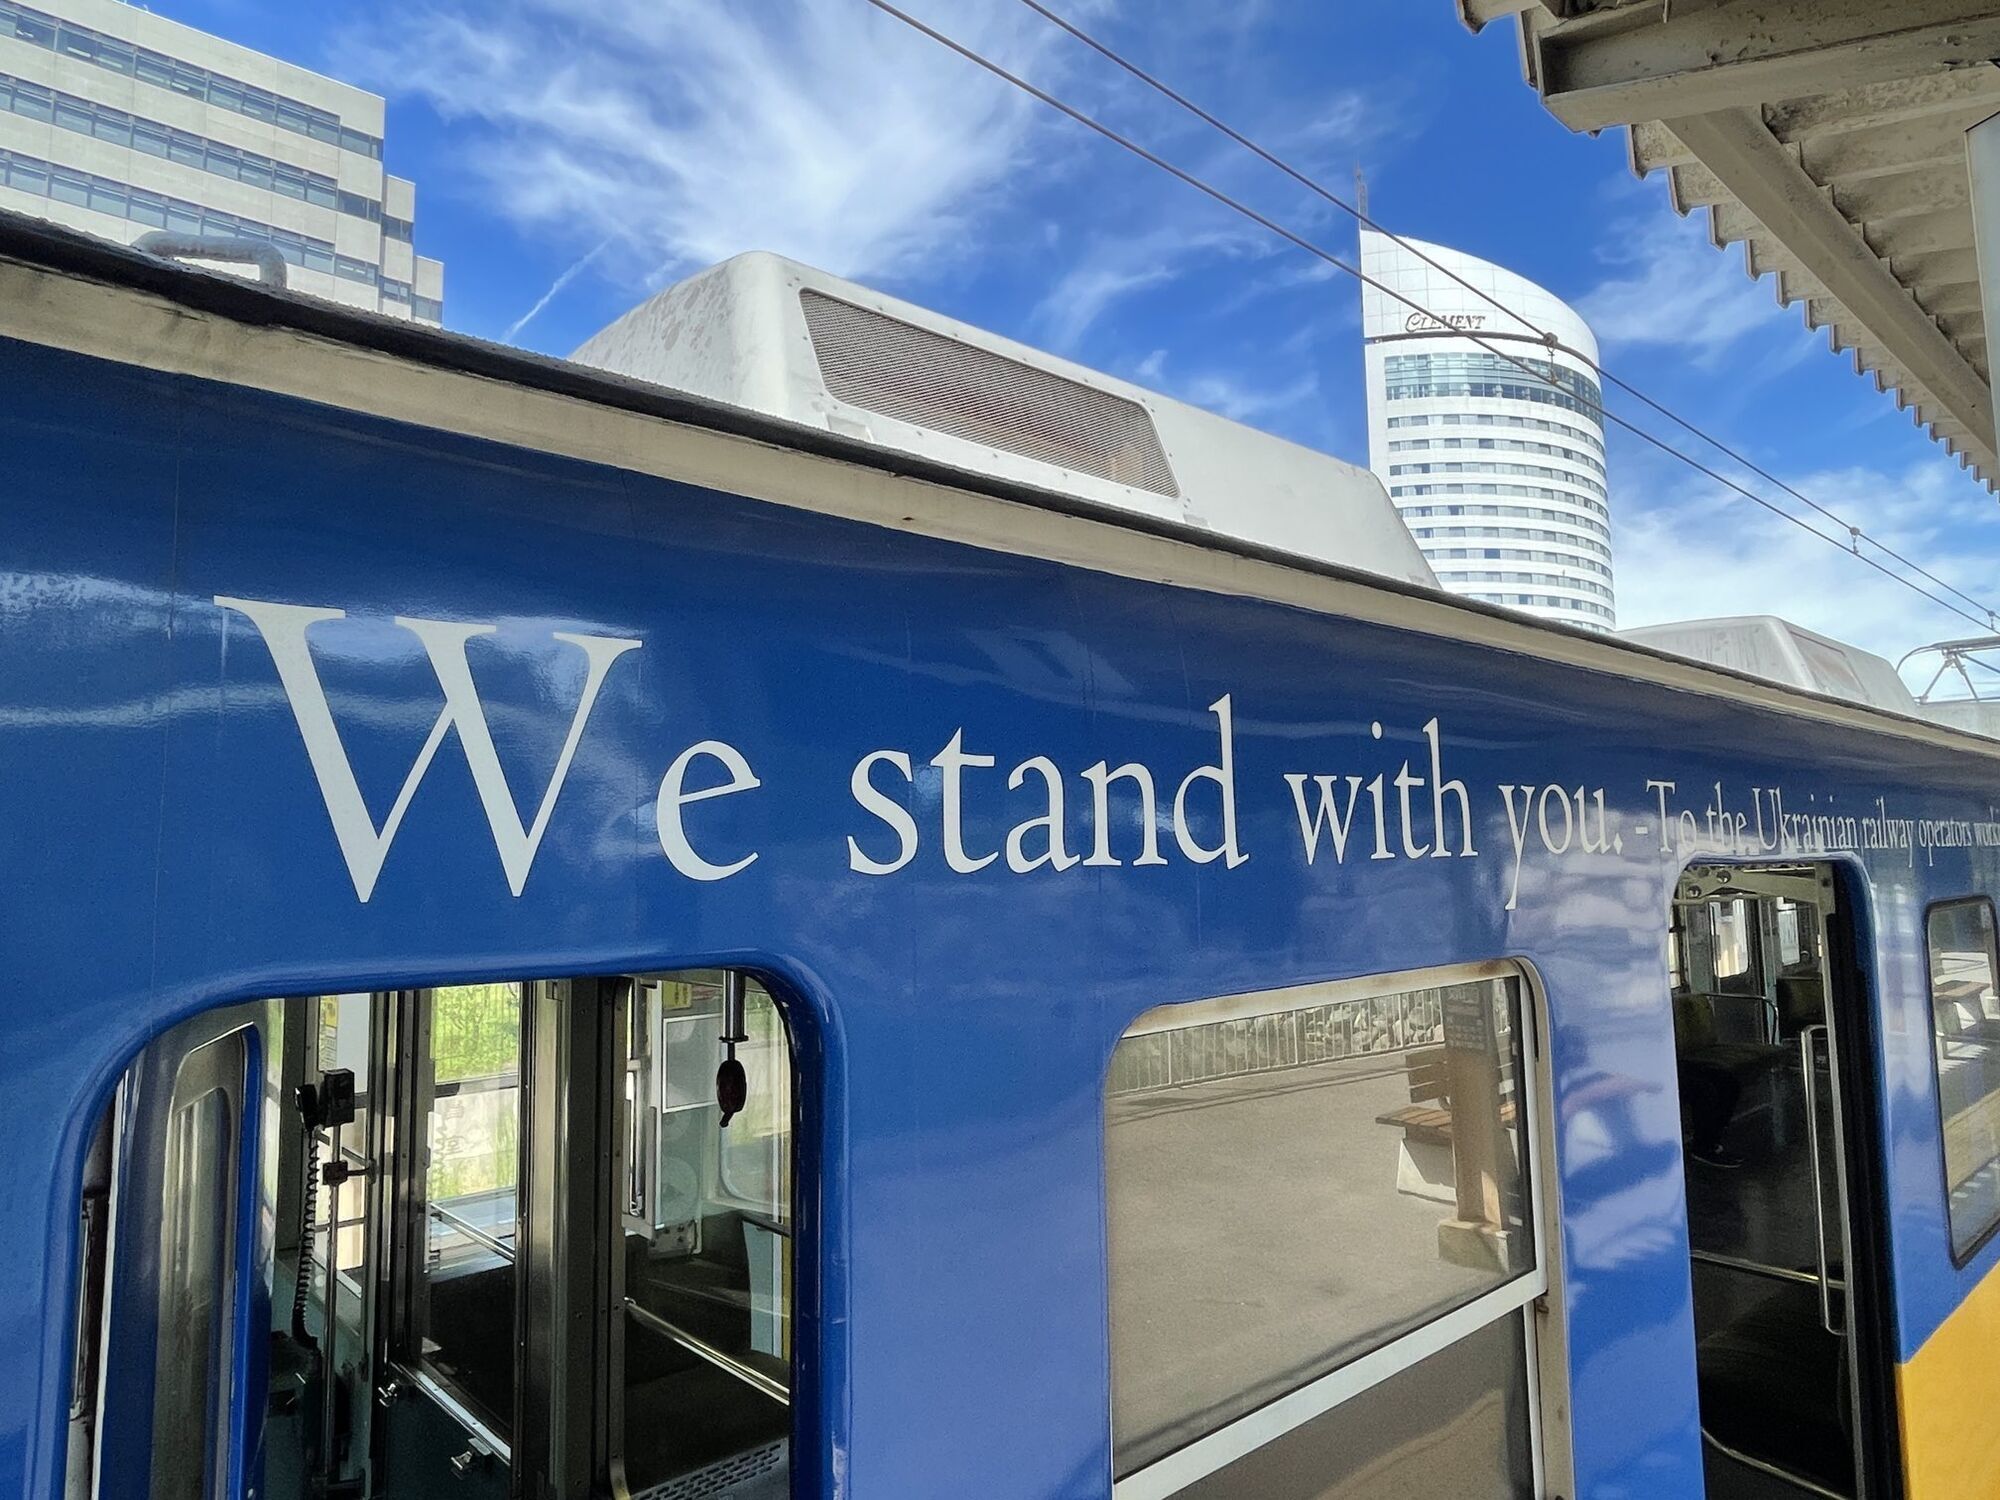 "We stand with you": в Японии поддержали Украину, запустив поезд в цветах украинского флага. Фото